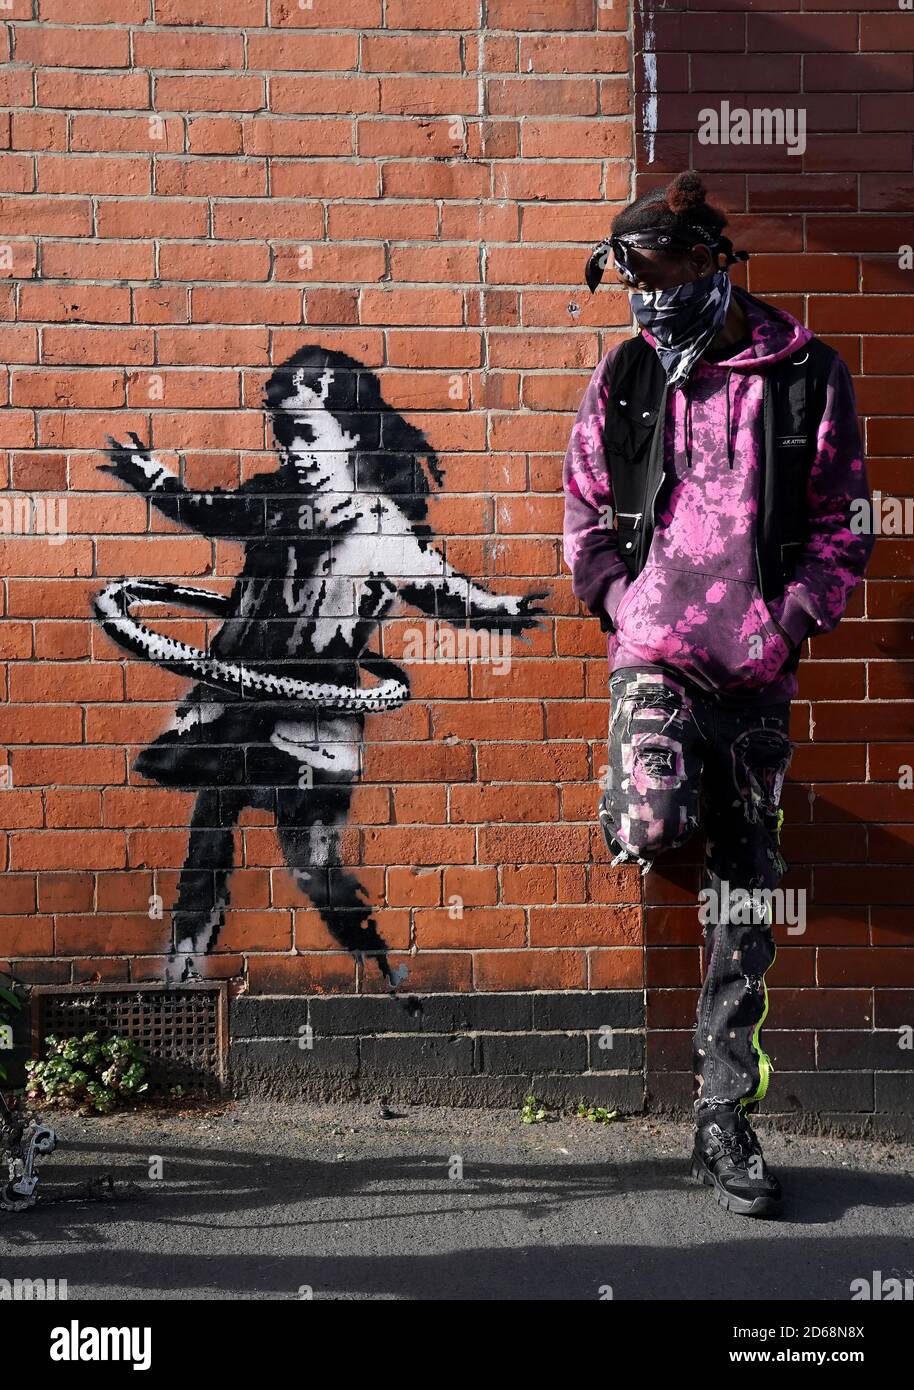 Phidizz, un habitant de Nottingham, pose pour une photo à côté de l'œuvre de graffiti, maintenant confirmée comme l'œuvre de l'artiste de rue Banksy, sur un côté d'une propriété à Rothesay Avenue et Ilkeston Road, Nottingham. L'œuvre représente une jeune fille jouant avec un pneu et est peinte sur un mur près d'un vélo abandonné qui manque une roue. Banque D'Images